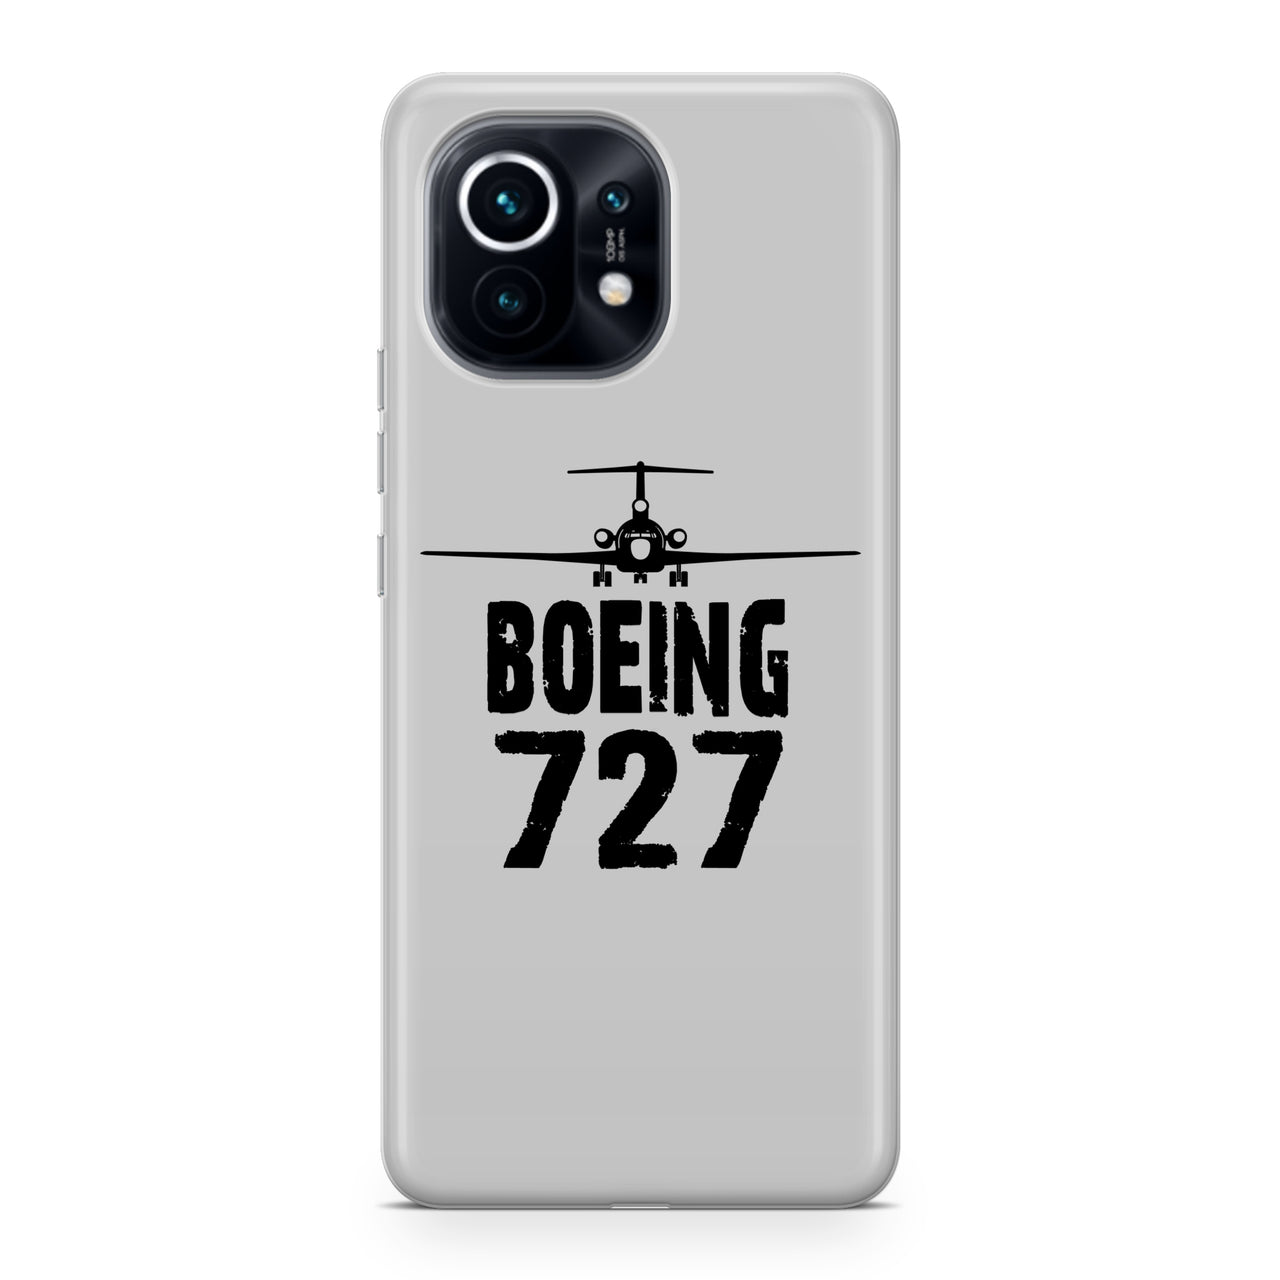 Boeing 727 & Plane Designed Xiaomi Cases